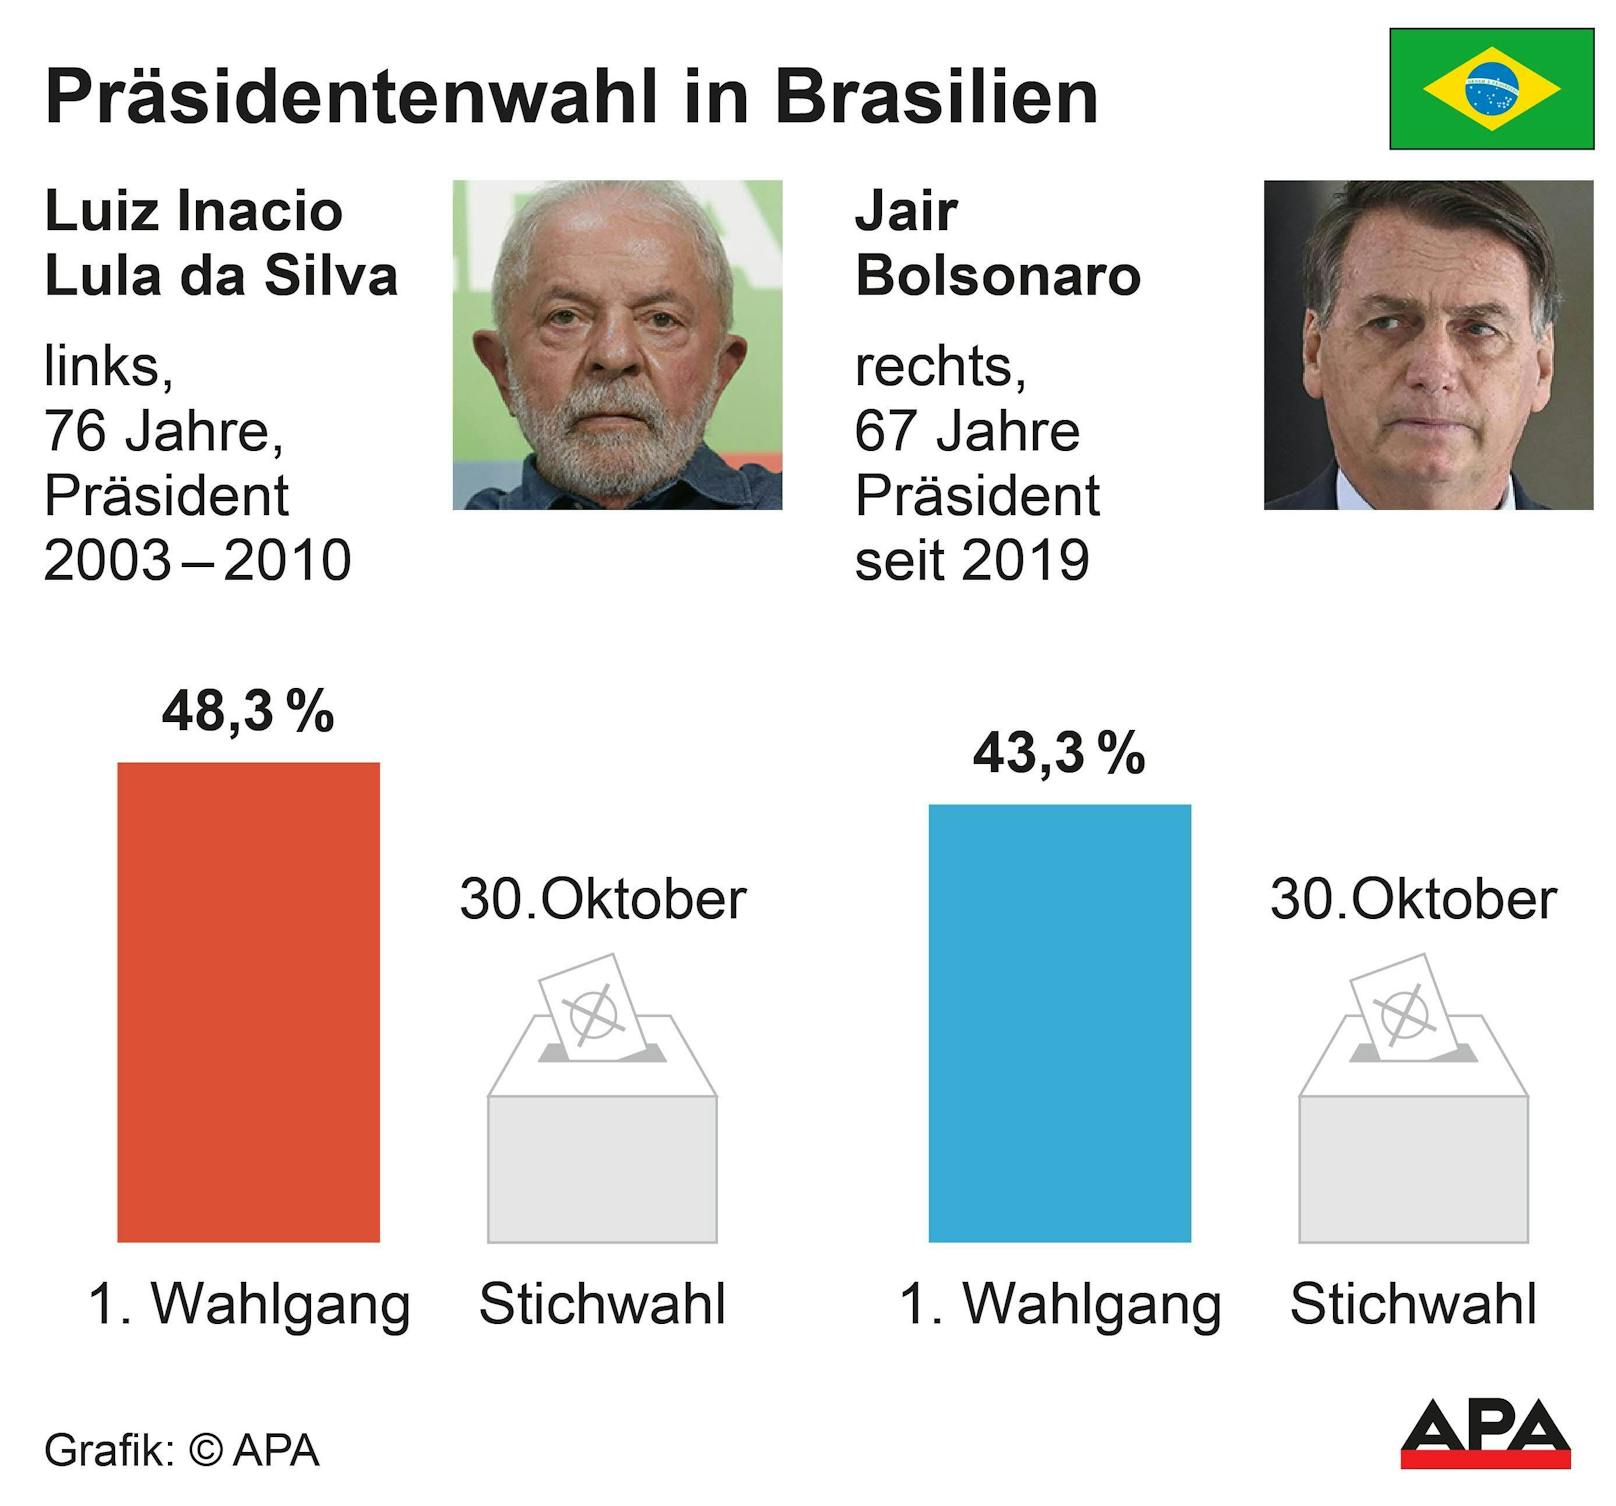 In vier Wochen findet eine Stichwahl zwischen Lula da Silva und Bolsonaro statt.